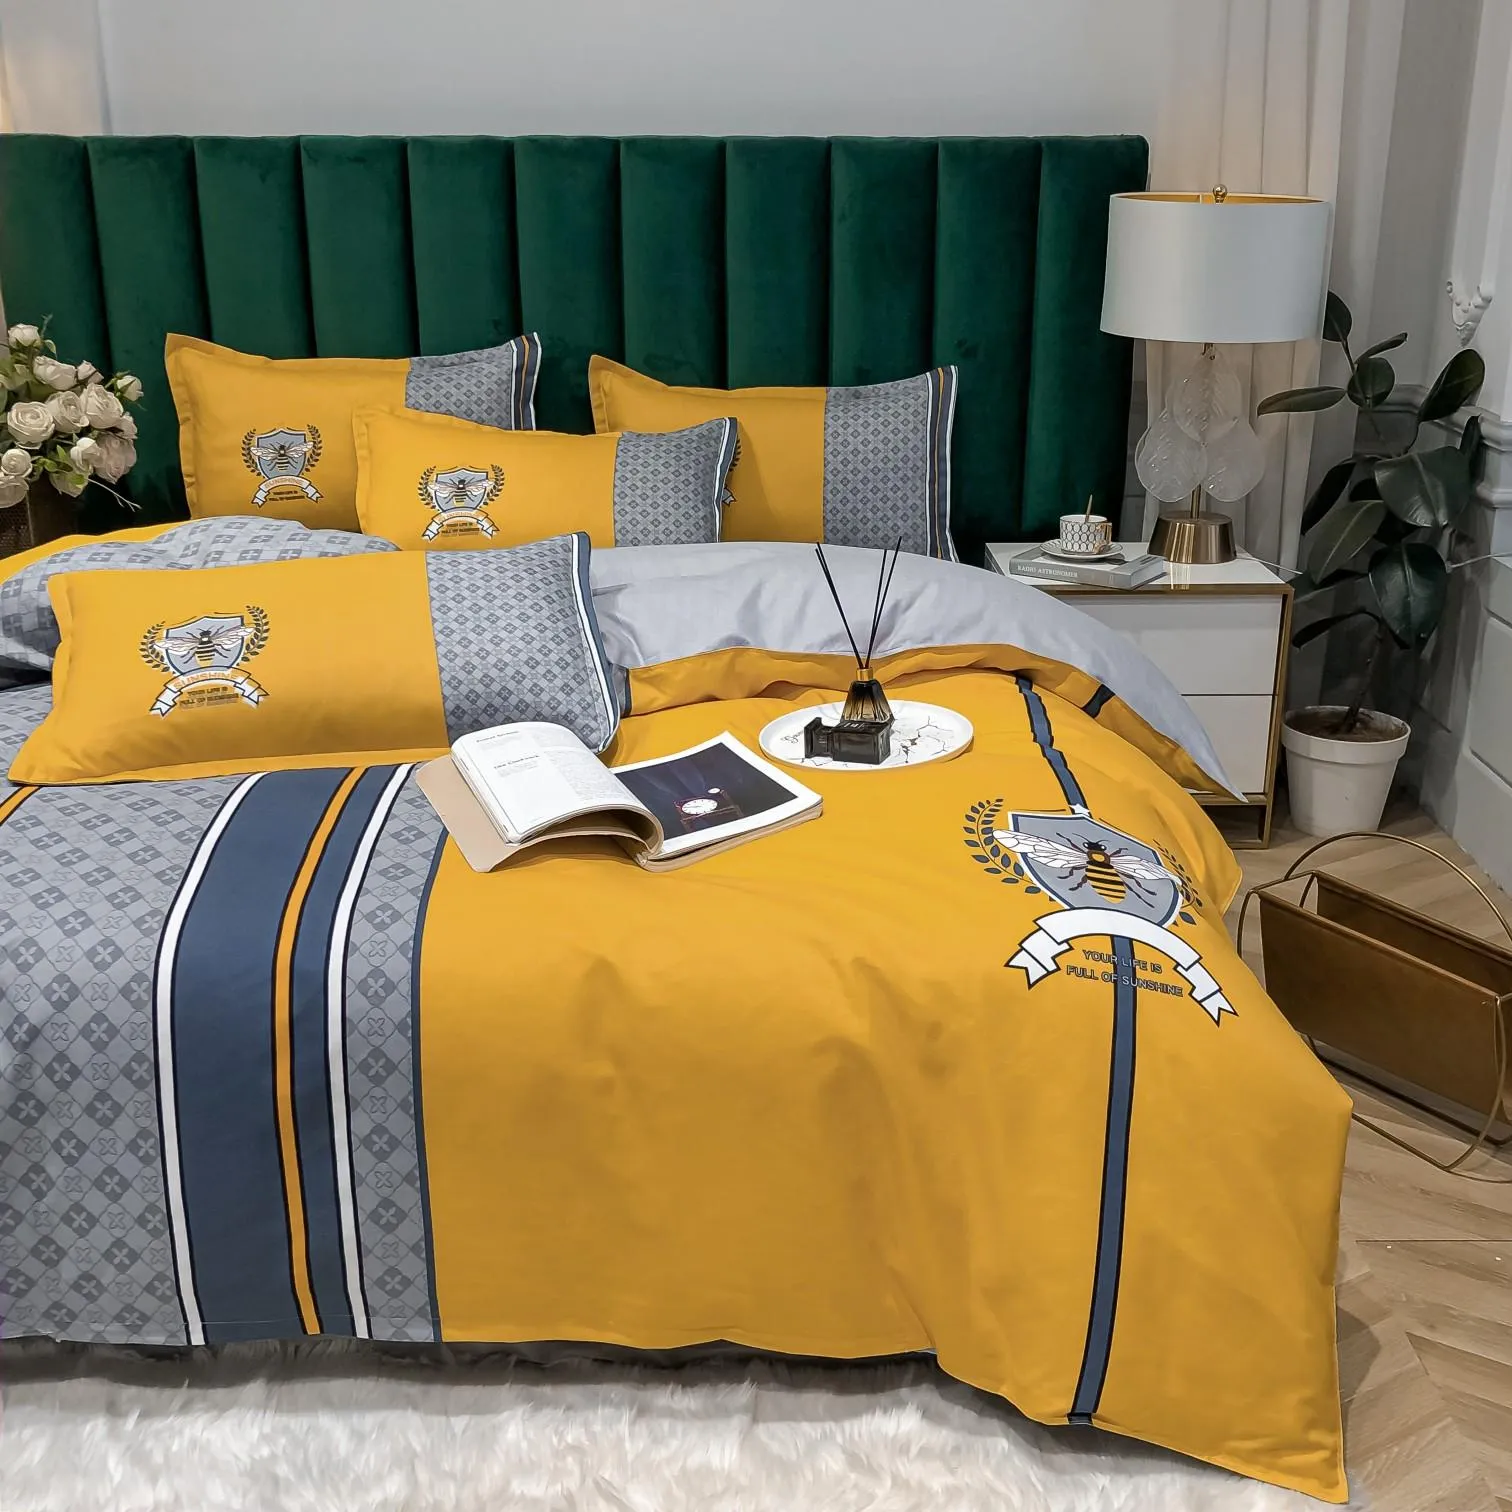 Современные дизайнерские наборы постельных принадлежностей покрывают модные высококачественные хлопковые размеры Queen -Size Comforters8089934